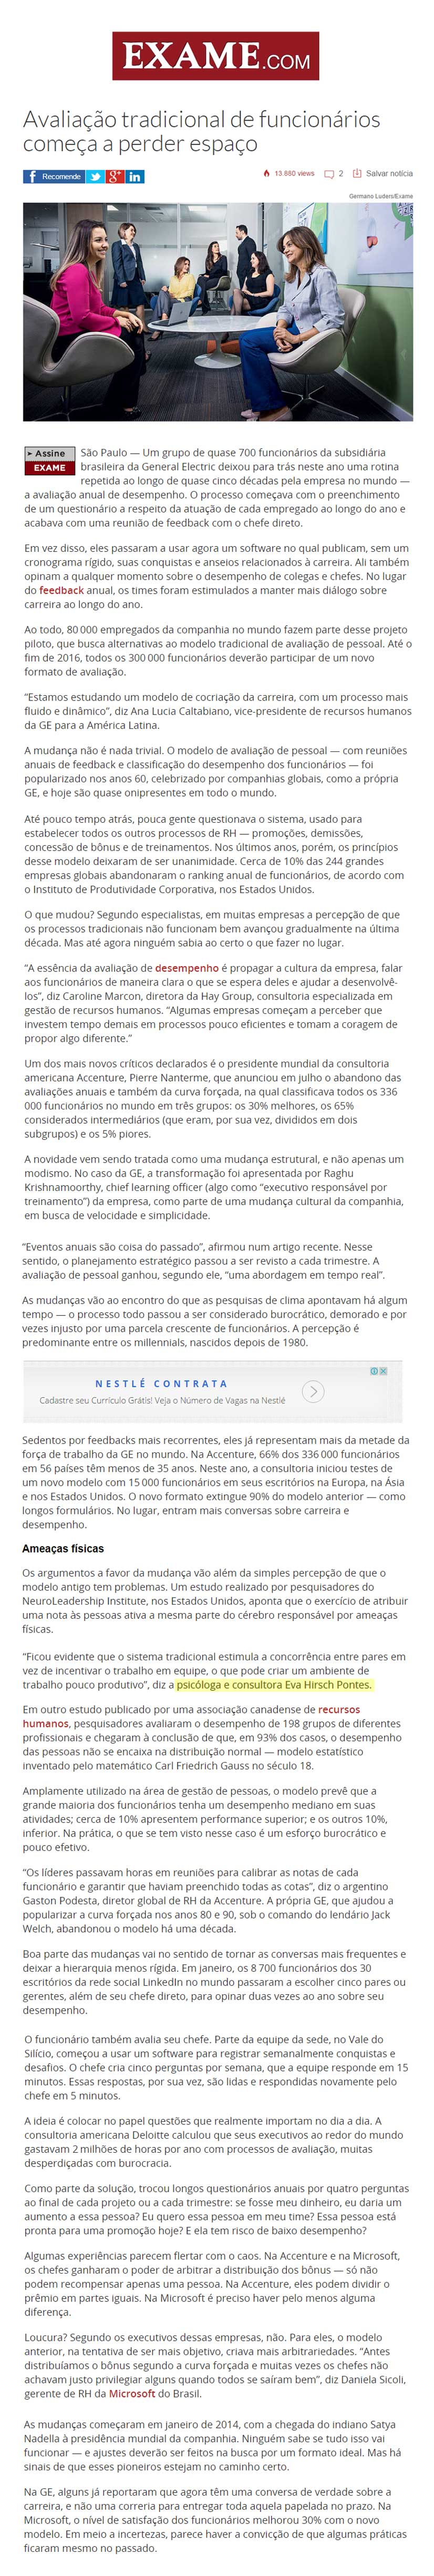 Exame.com_Gestão_03.09.2015